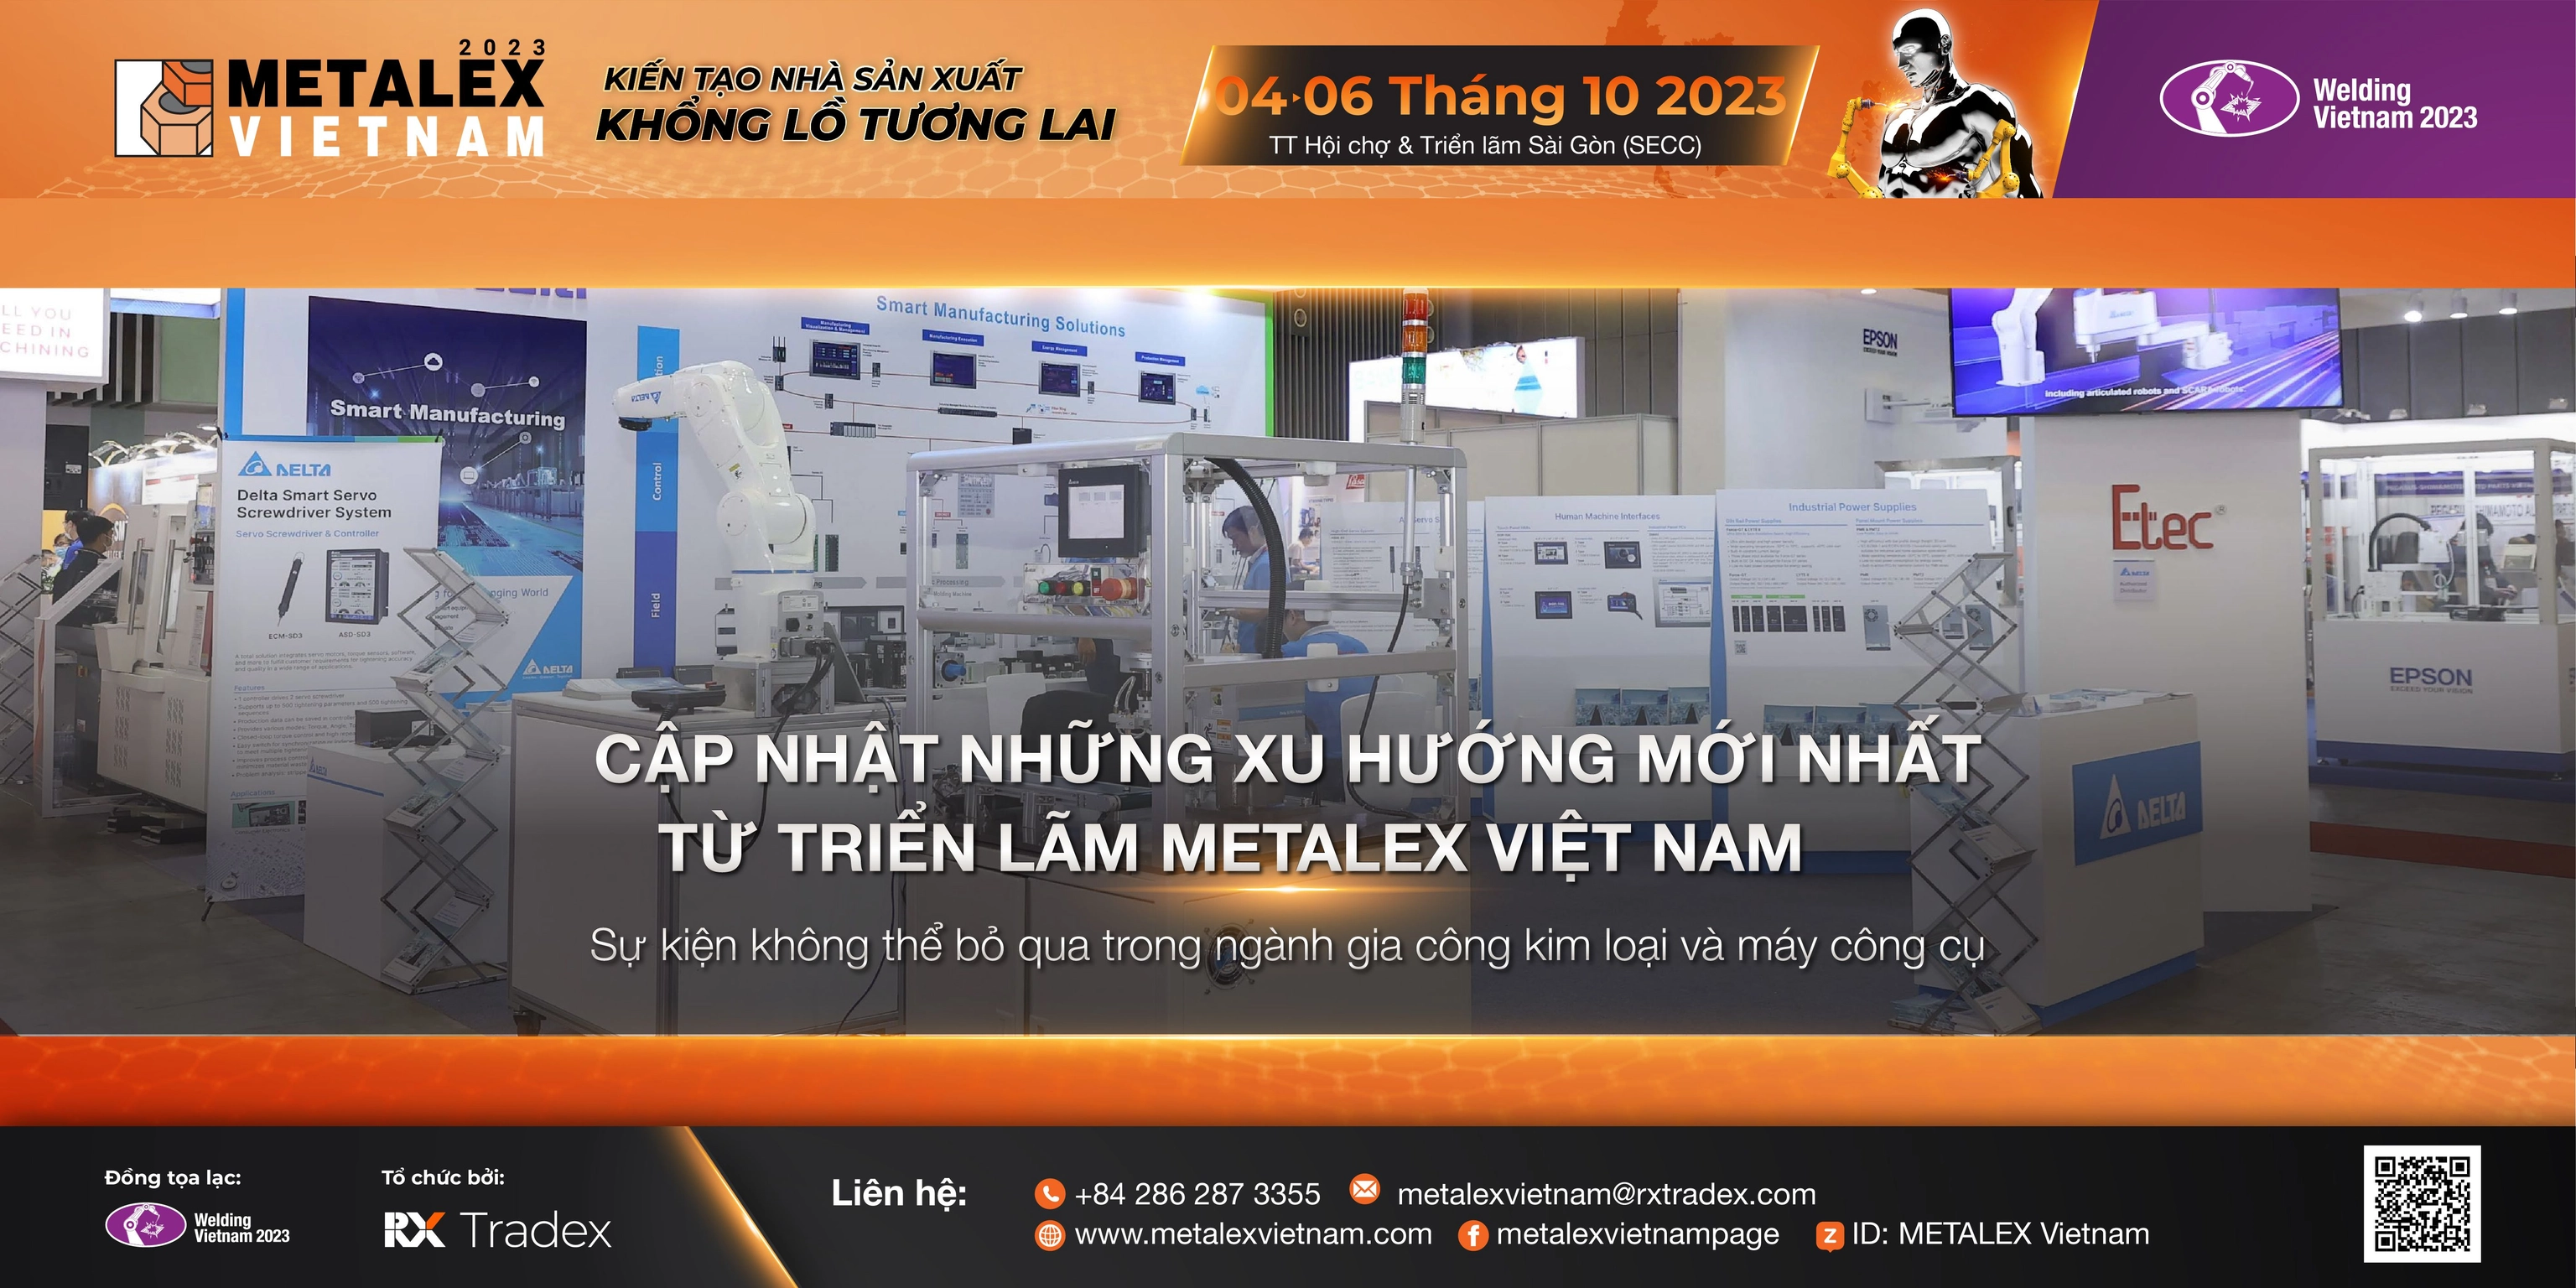 Cập nhật những xu hướng mới nhất từ triển lãm Metalex Việt Nam